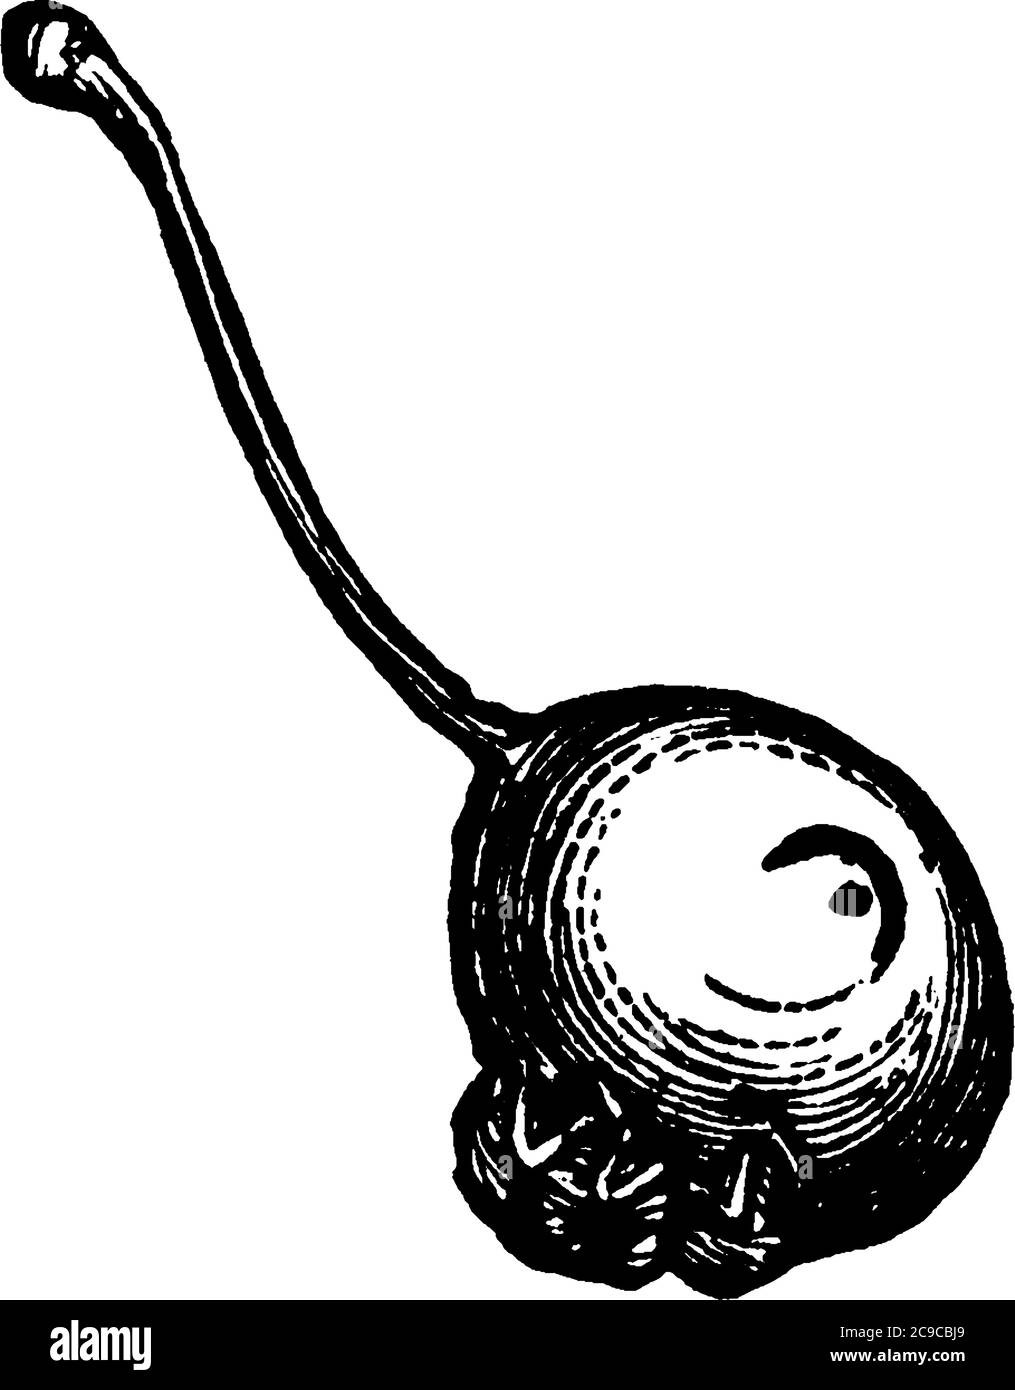 Le curculio de prune est un vrai charançon originaire des régions à l'est des montagnes Rocheuses aux États-Unis et au Canada, dessin de ligne d'époque ou de gravin Illustration de Vecteur